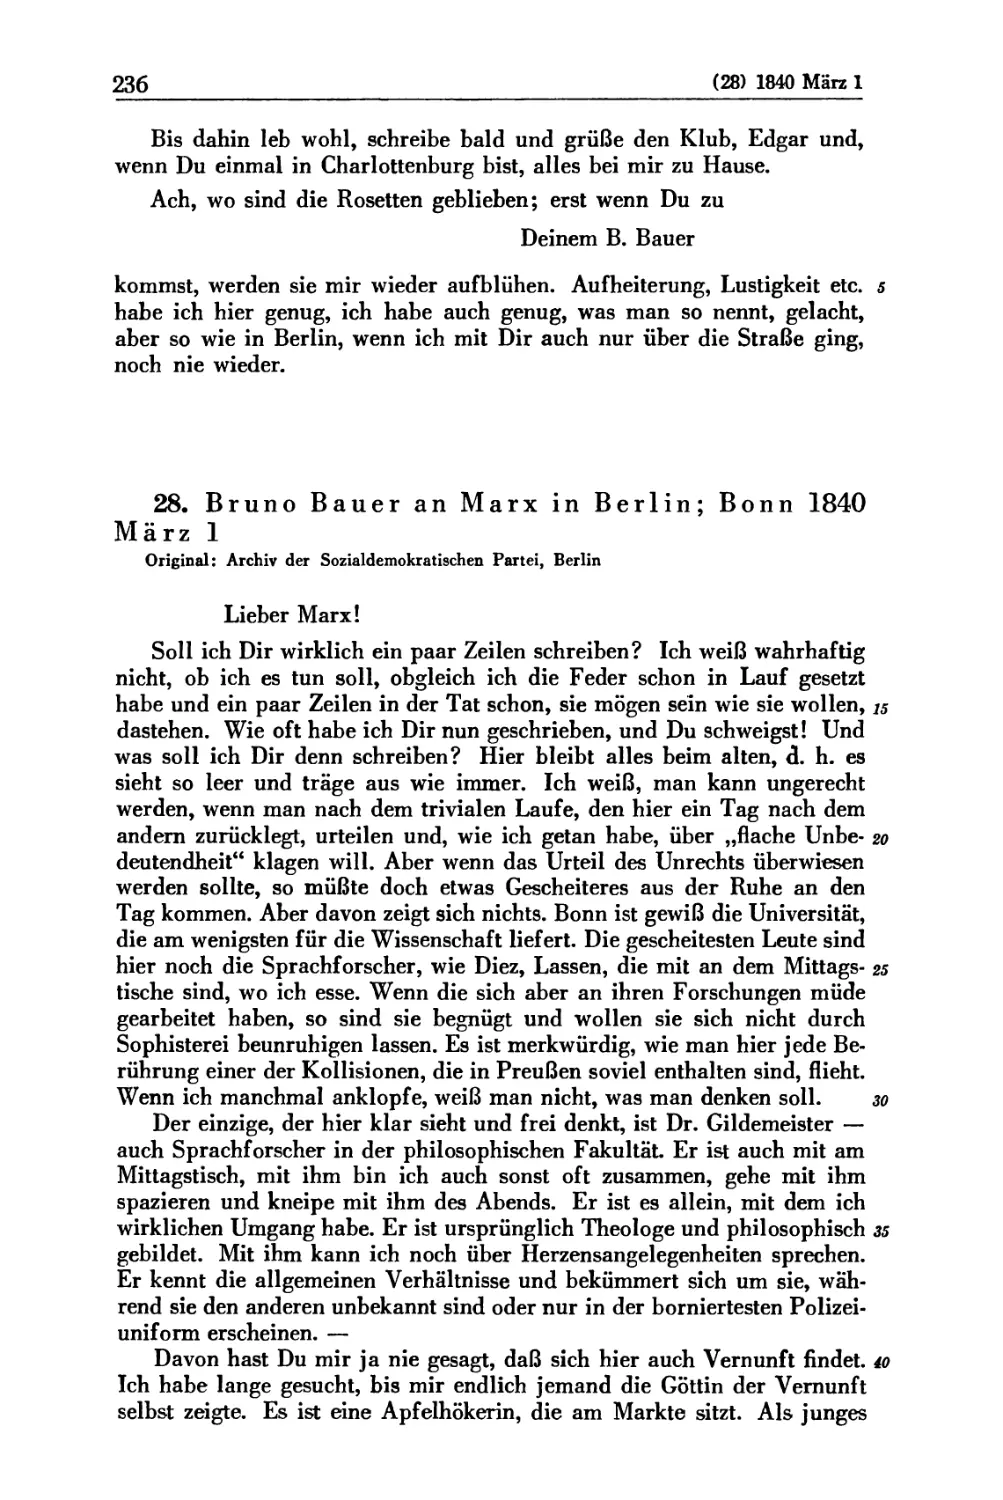 28. Bruno Bauer an Marx in Berlin; Bonn 1840 März 1